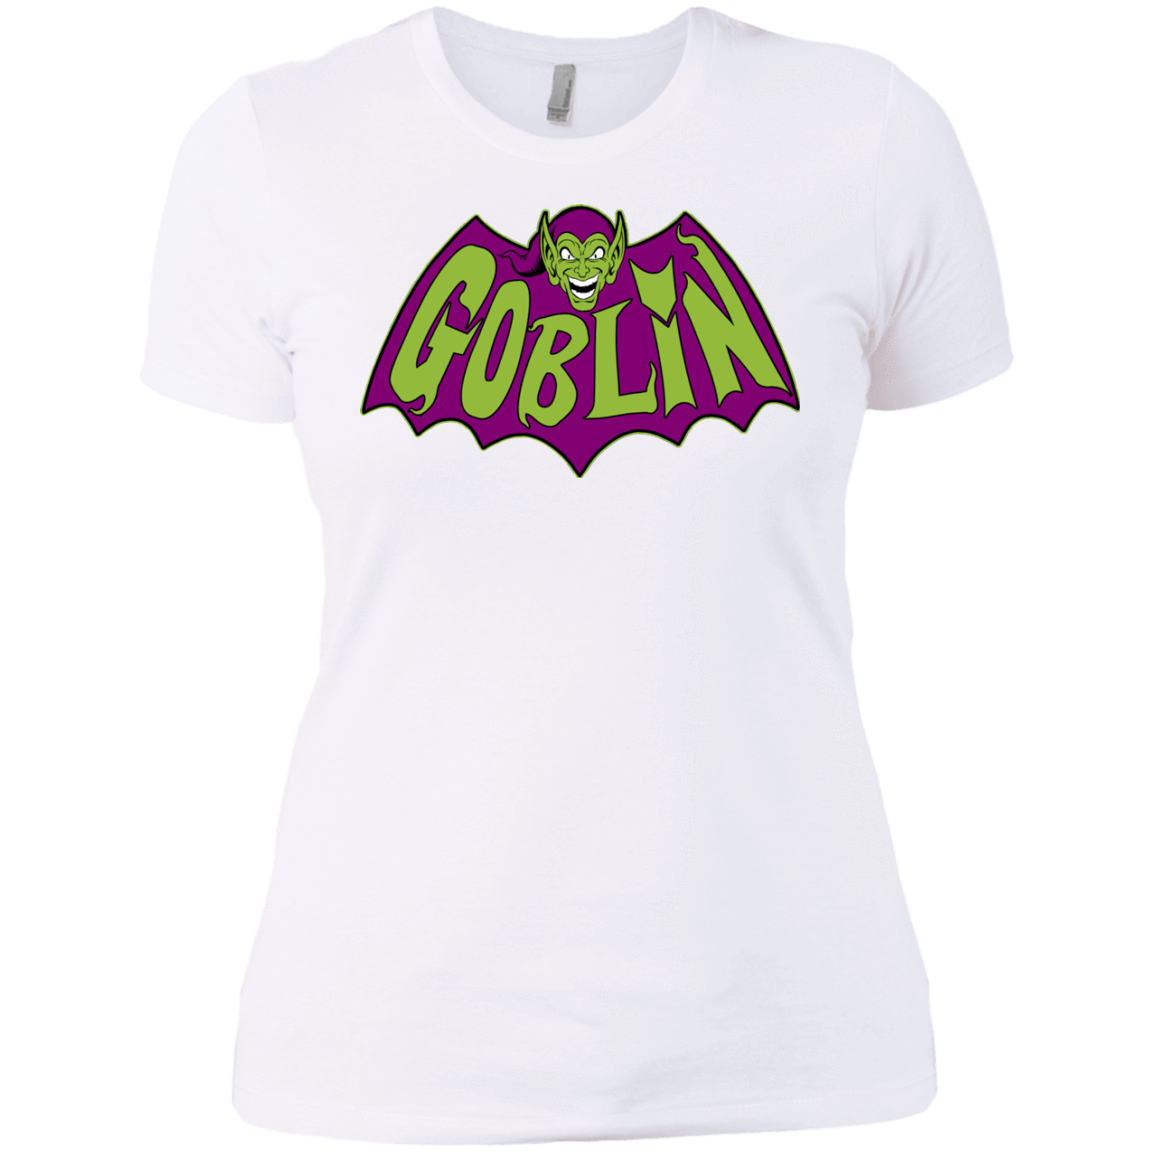 T-Shirts White / X-Small Goblin Women's Premium T-Shirt